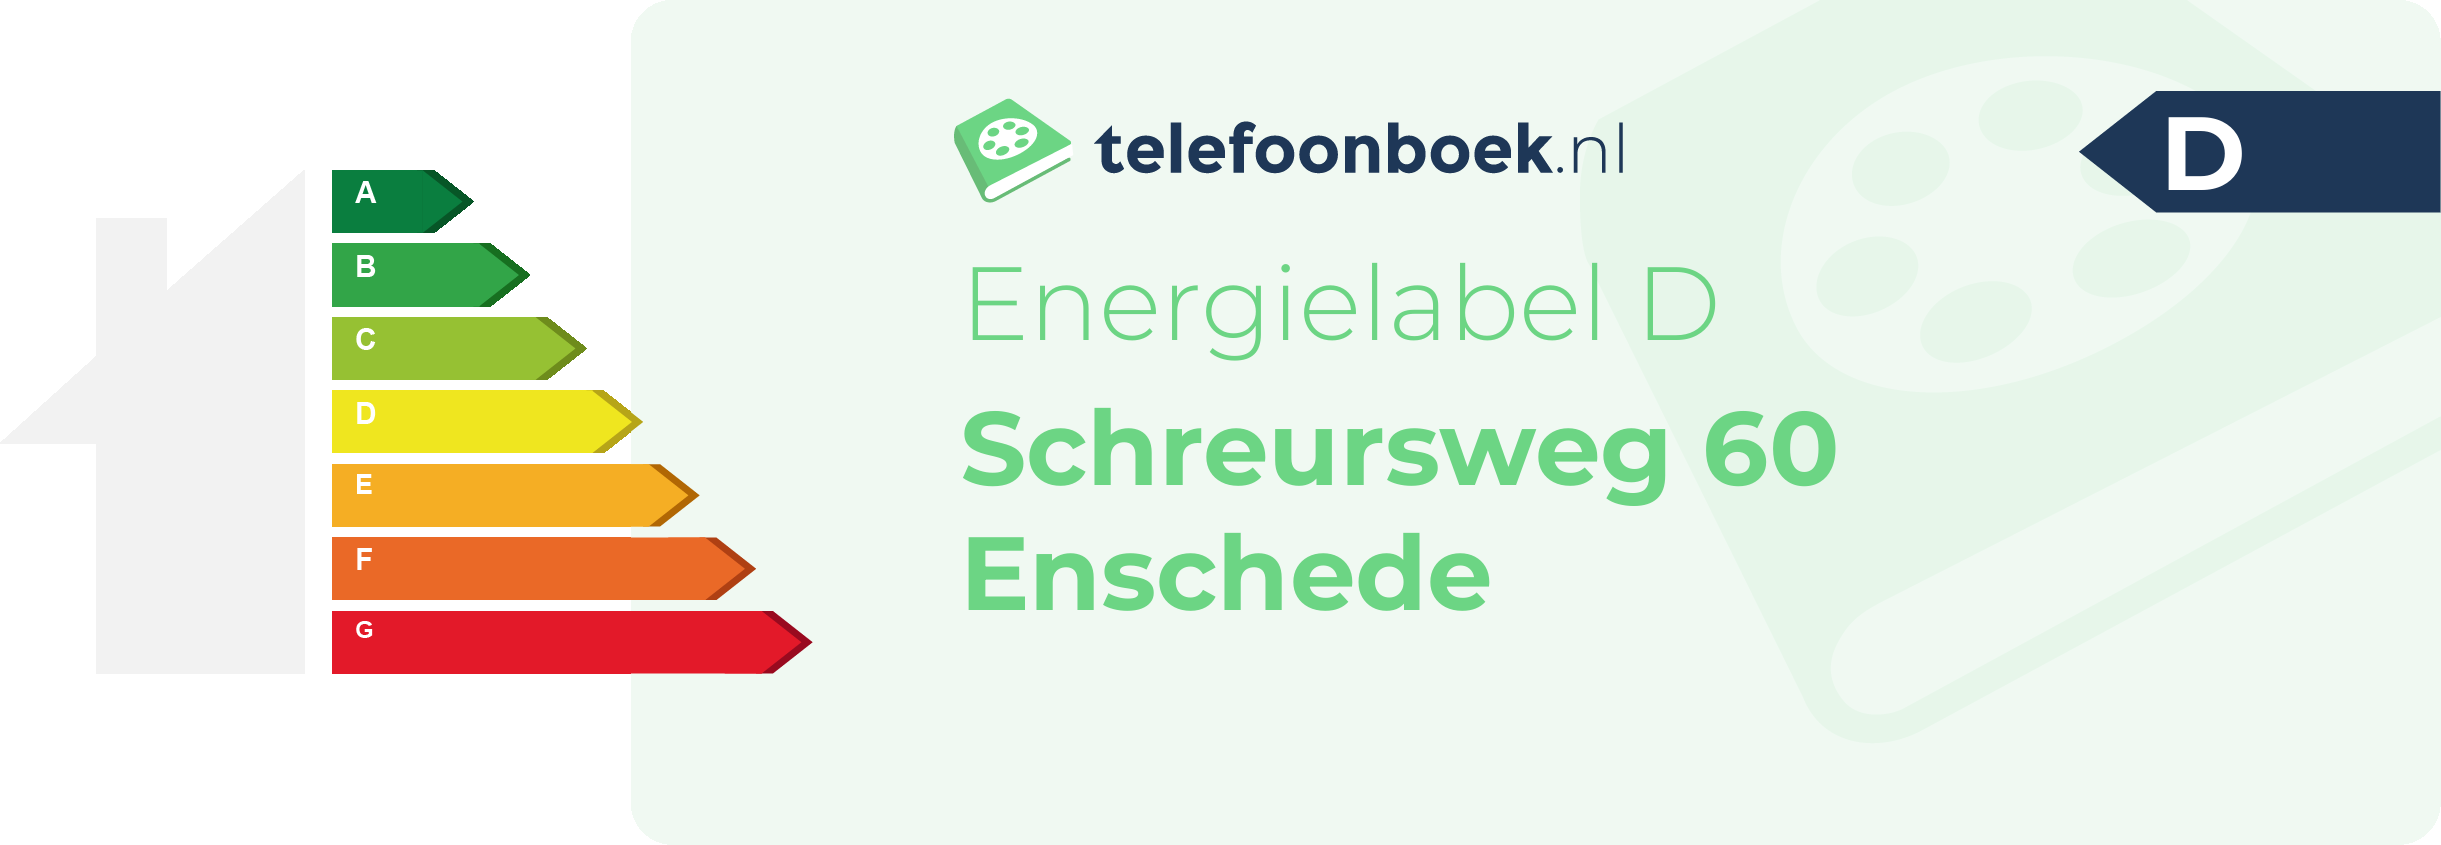 Energielabel Schreursweg 60 Enschede